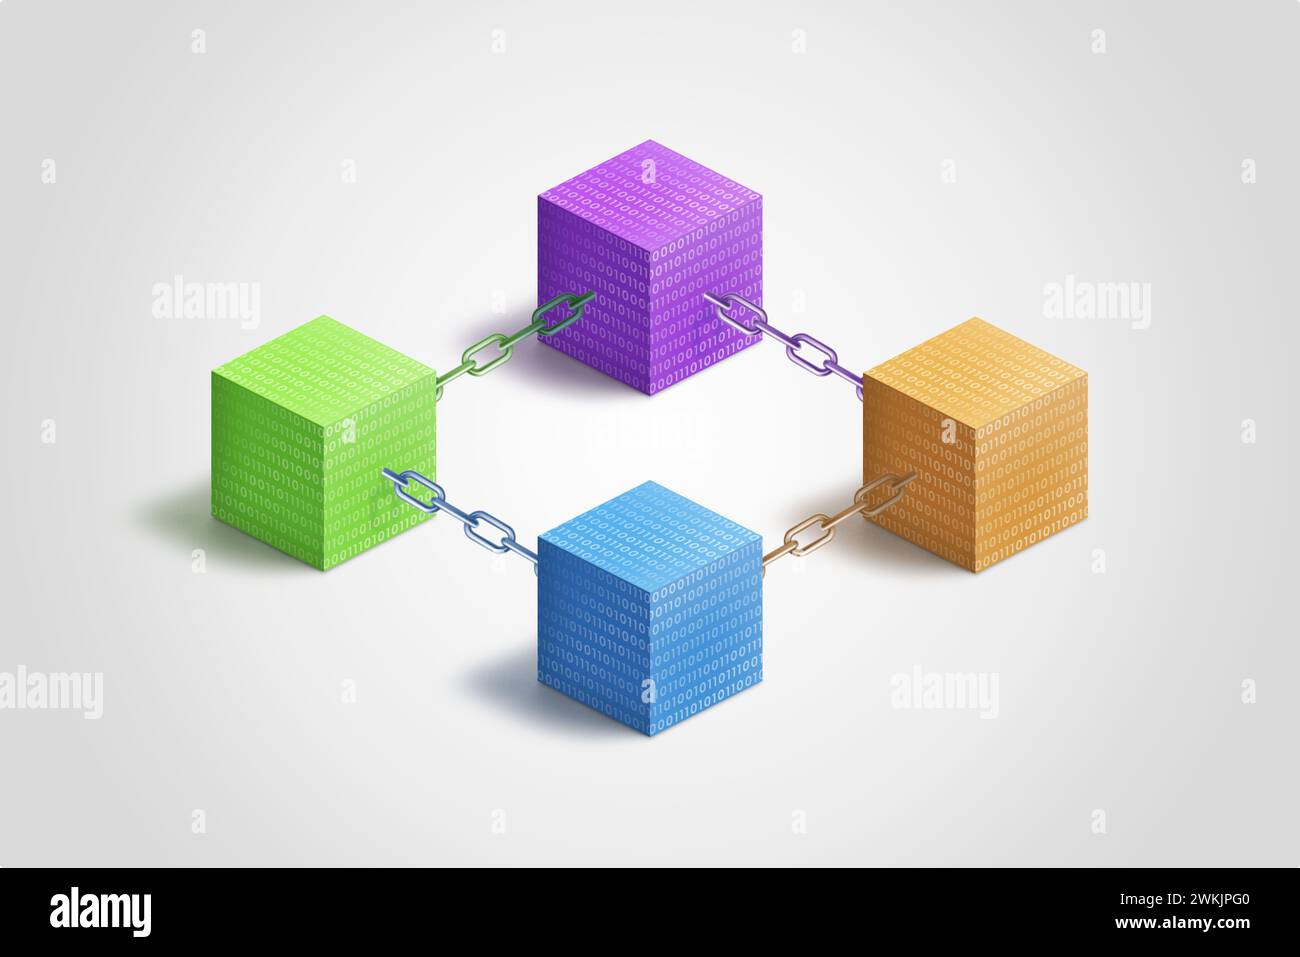 Cubi blockchain colorati interconnessi da catene, adornati da codice binario. Simbolo della connettività digitale e della sicurezza. Ideale per la tecnologia e la finanza Foto Stock